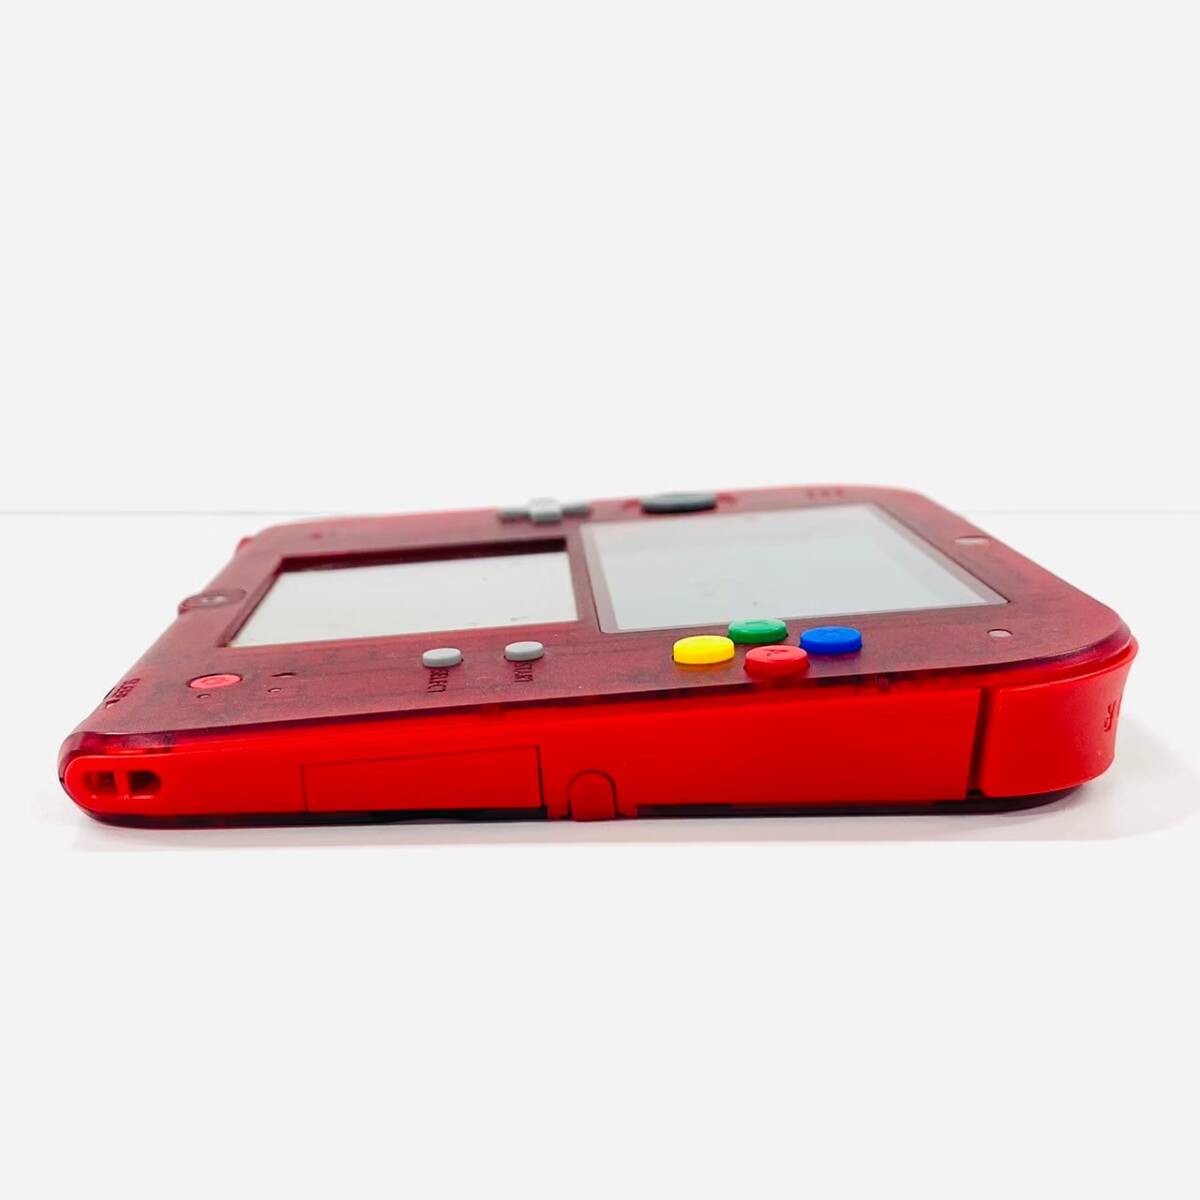 H617-Z13-221 Nintendo ニンテンドー 2DS ポケットモンスター 赤 限定パック 箱付き FTR-001 本体 ゲーム機 玩具 おもちゃ ④_画像4